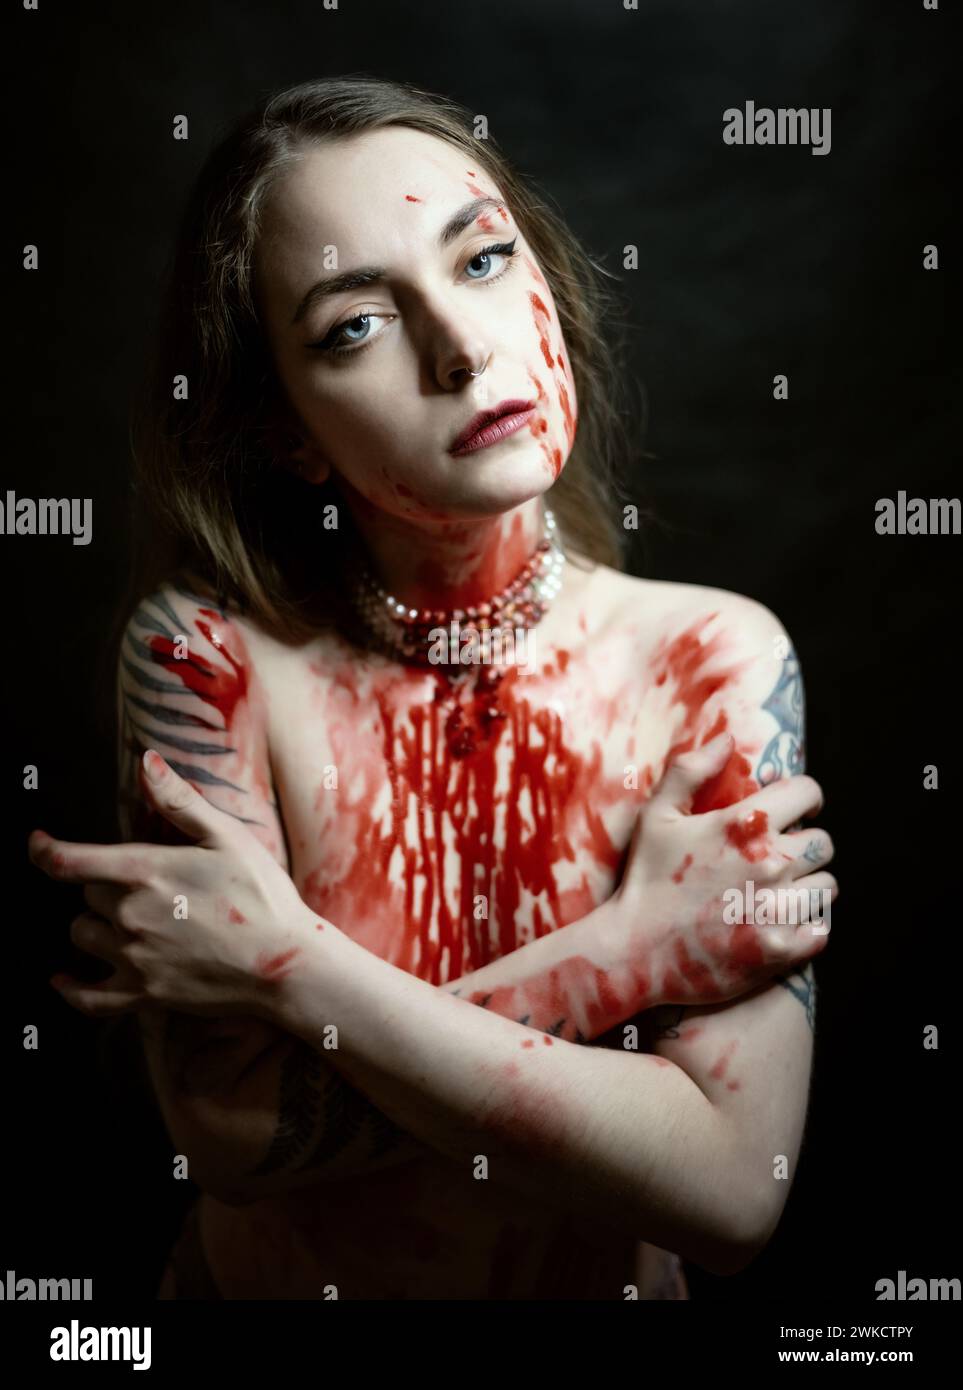 Portrait de jeune femme avec de la peinture rouge sur sa poitrine sur fond sombre. Banque D'Images